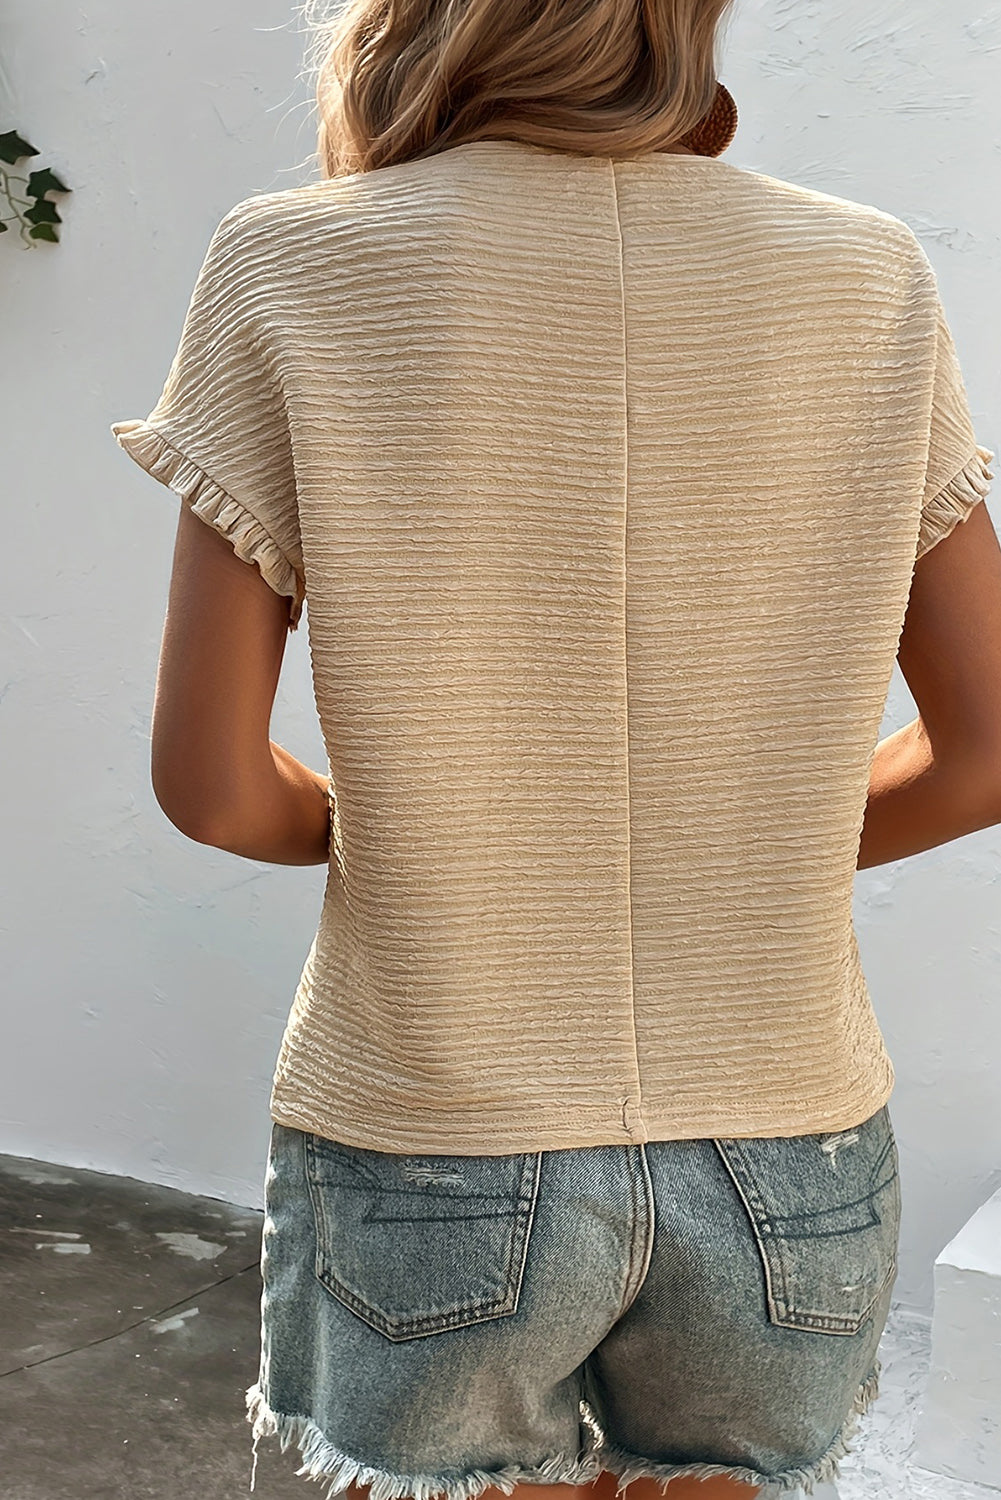 Jednobojna teksturirana bluza kratkih rukava s volanima boje marelice